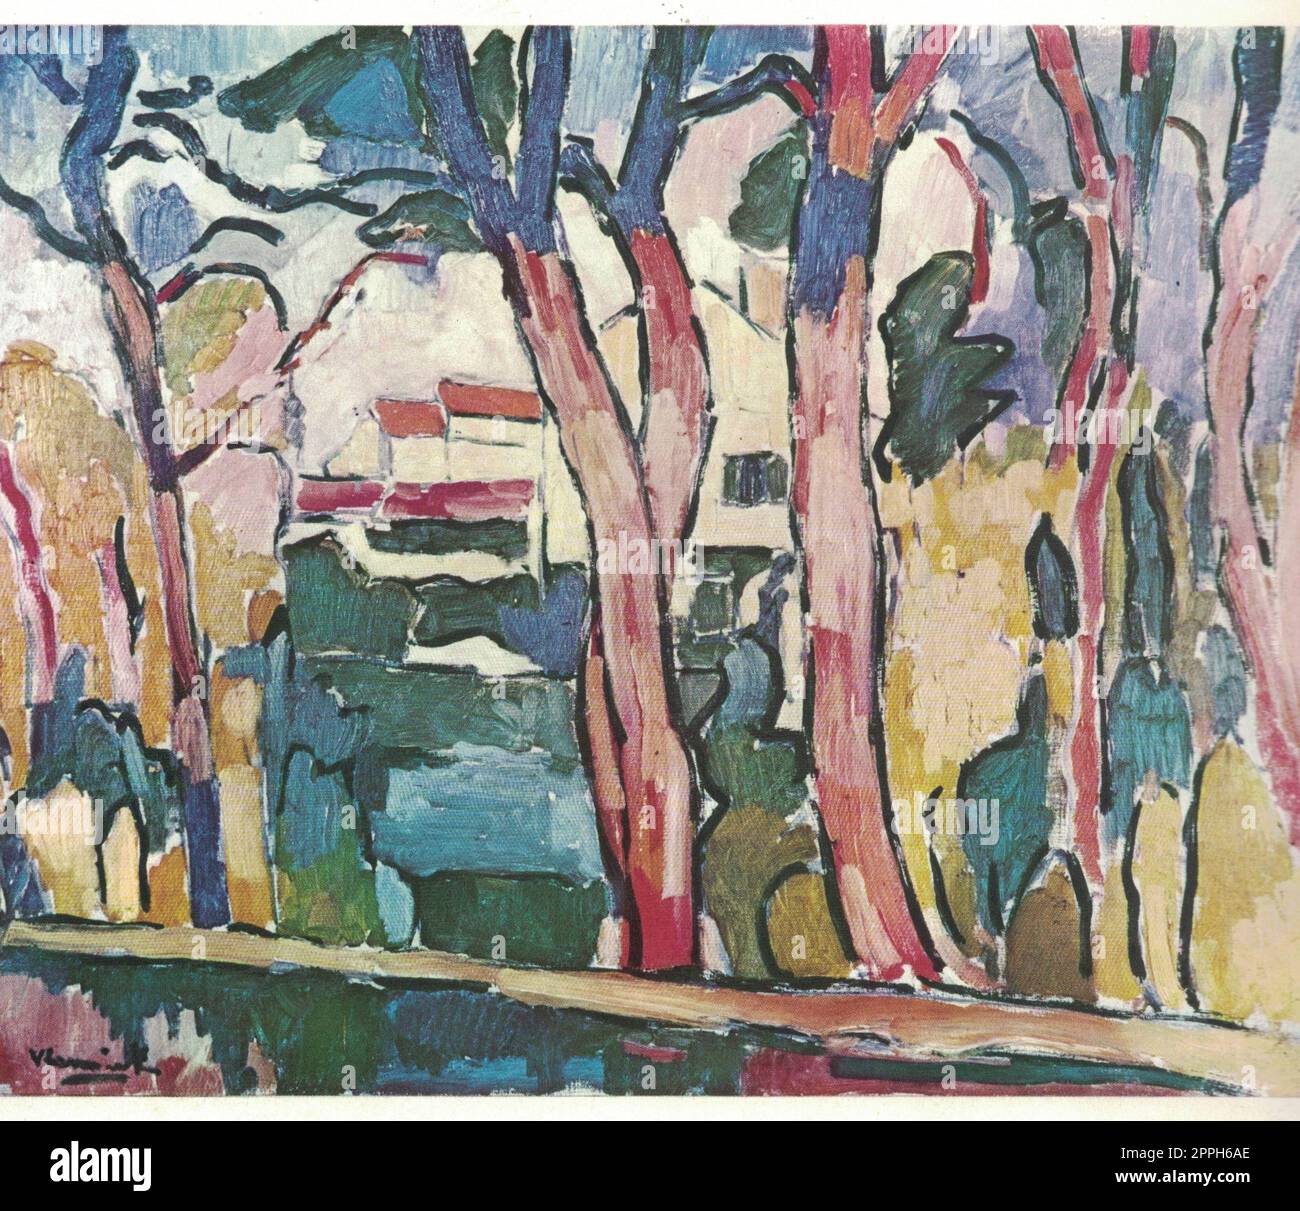 Landschaft mit roten Bäumen, 1906. Paintig von Maurice Vlaminck. Maurice de Vlaminck, 4. April 1876 - 11. Oktober 1958, war französischer Maler. Zusammen mit Andr Derain und Henri Matisse gilt er als eine der Hauptfiguren der Fauve-Bewegung, einer Gruppe o Stockfoto